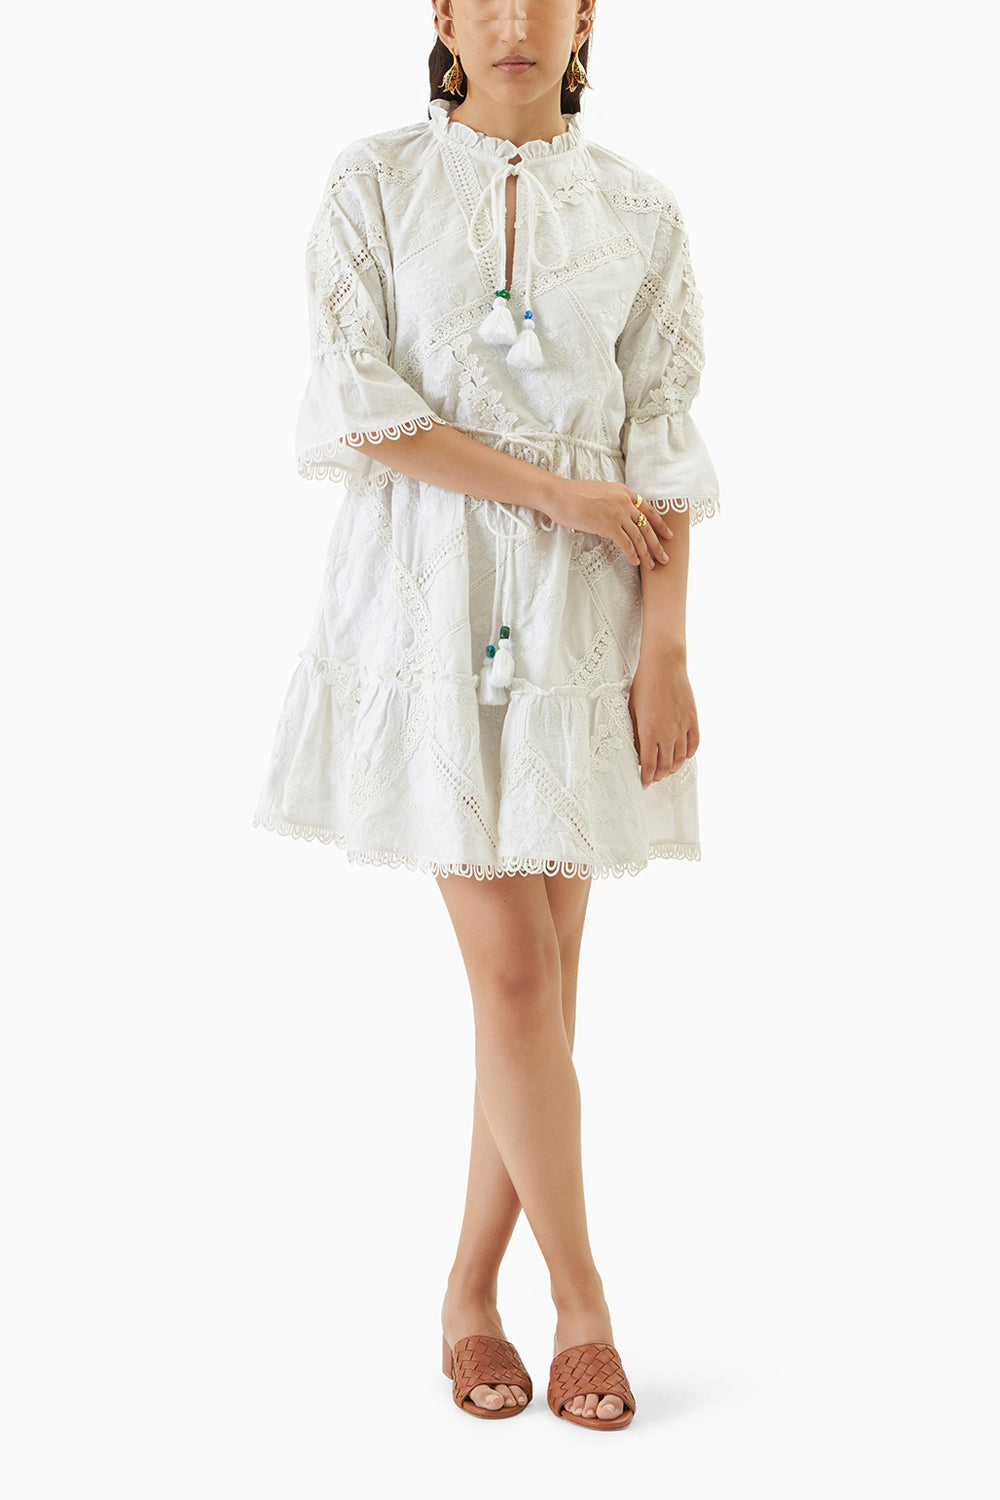 Dreamflower dress